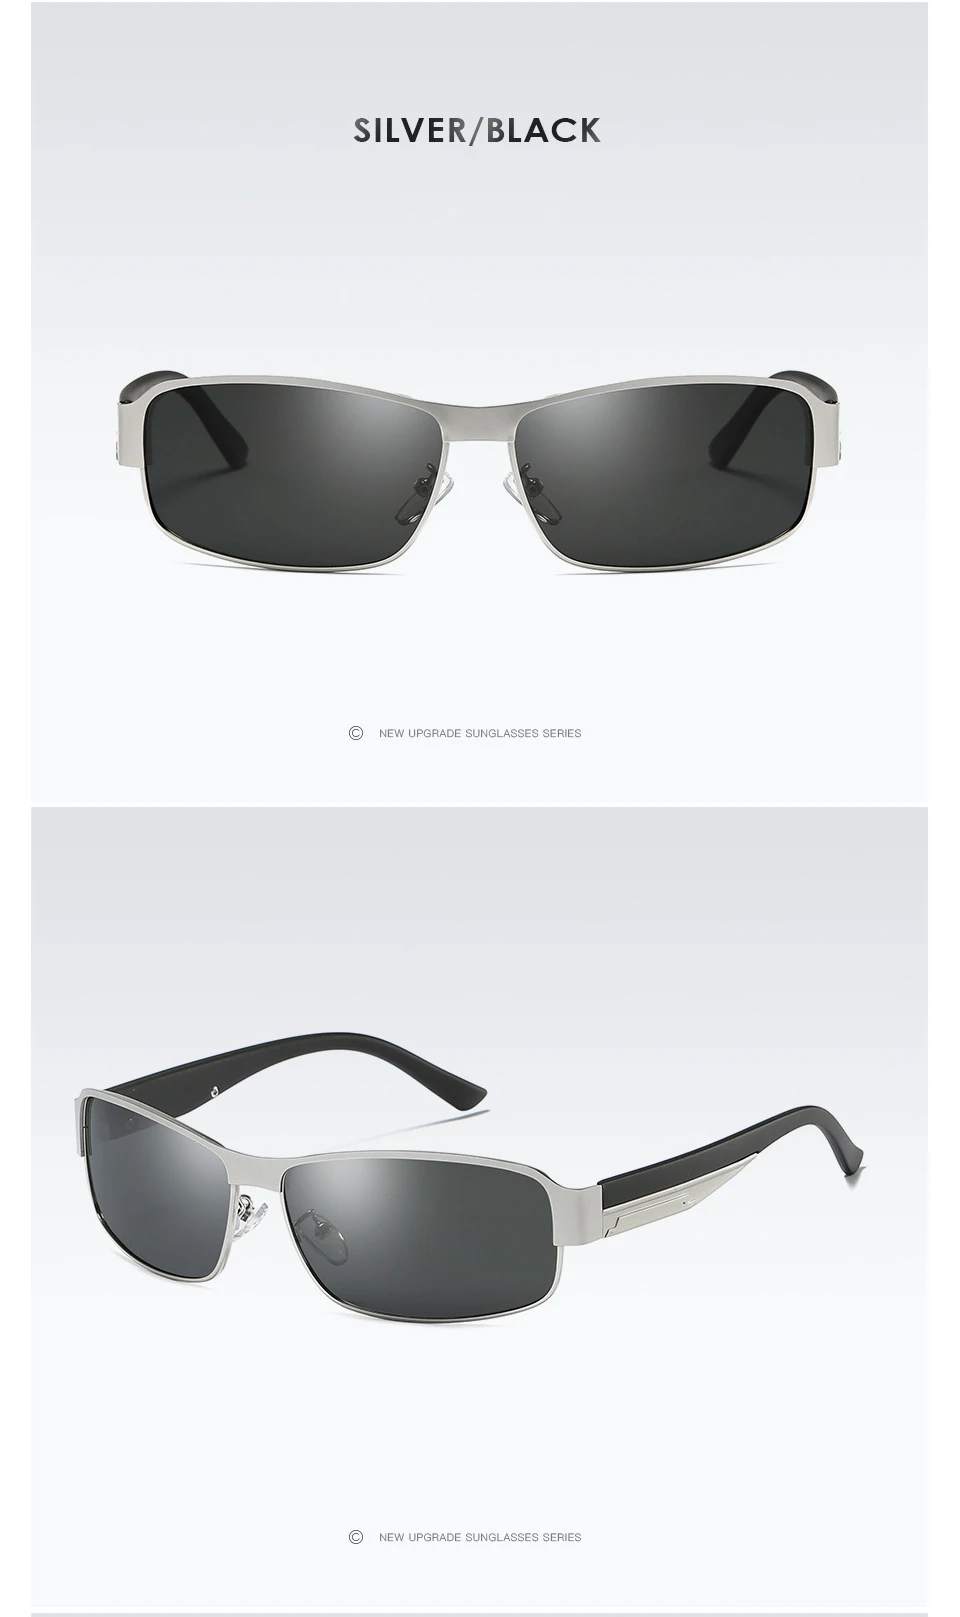 Ретро Винтаж Мужские поляризационные солнцезащитные очки для женщин прямоугольник для вождения, рыбной ловли, уличные солнцезащитные очки, оправа из металлического сплава очки UV400